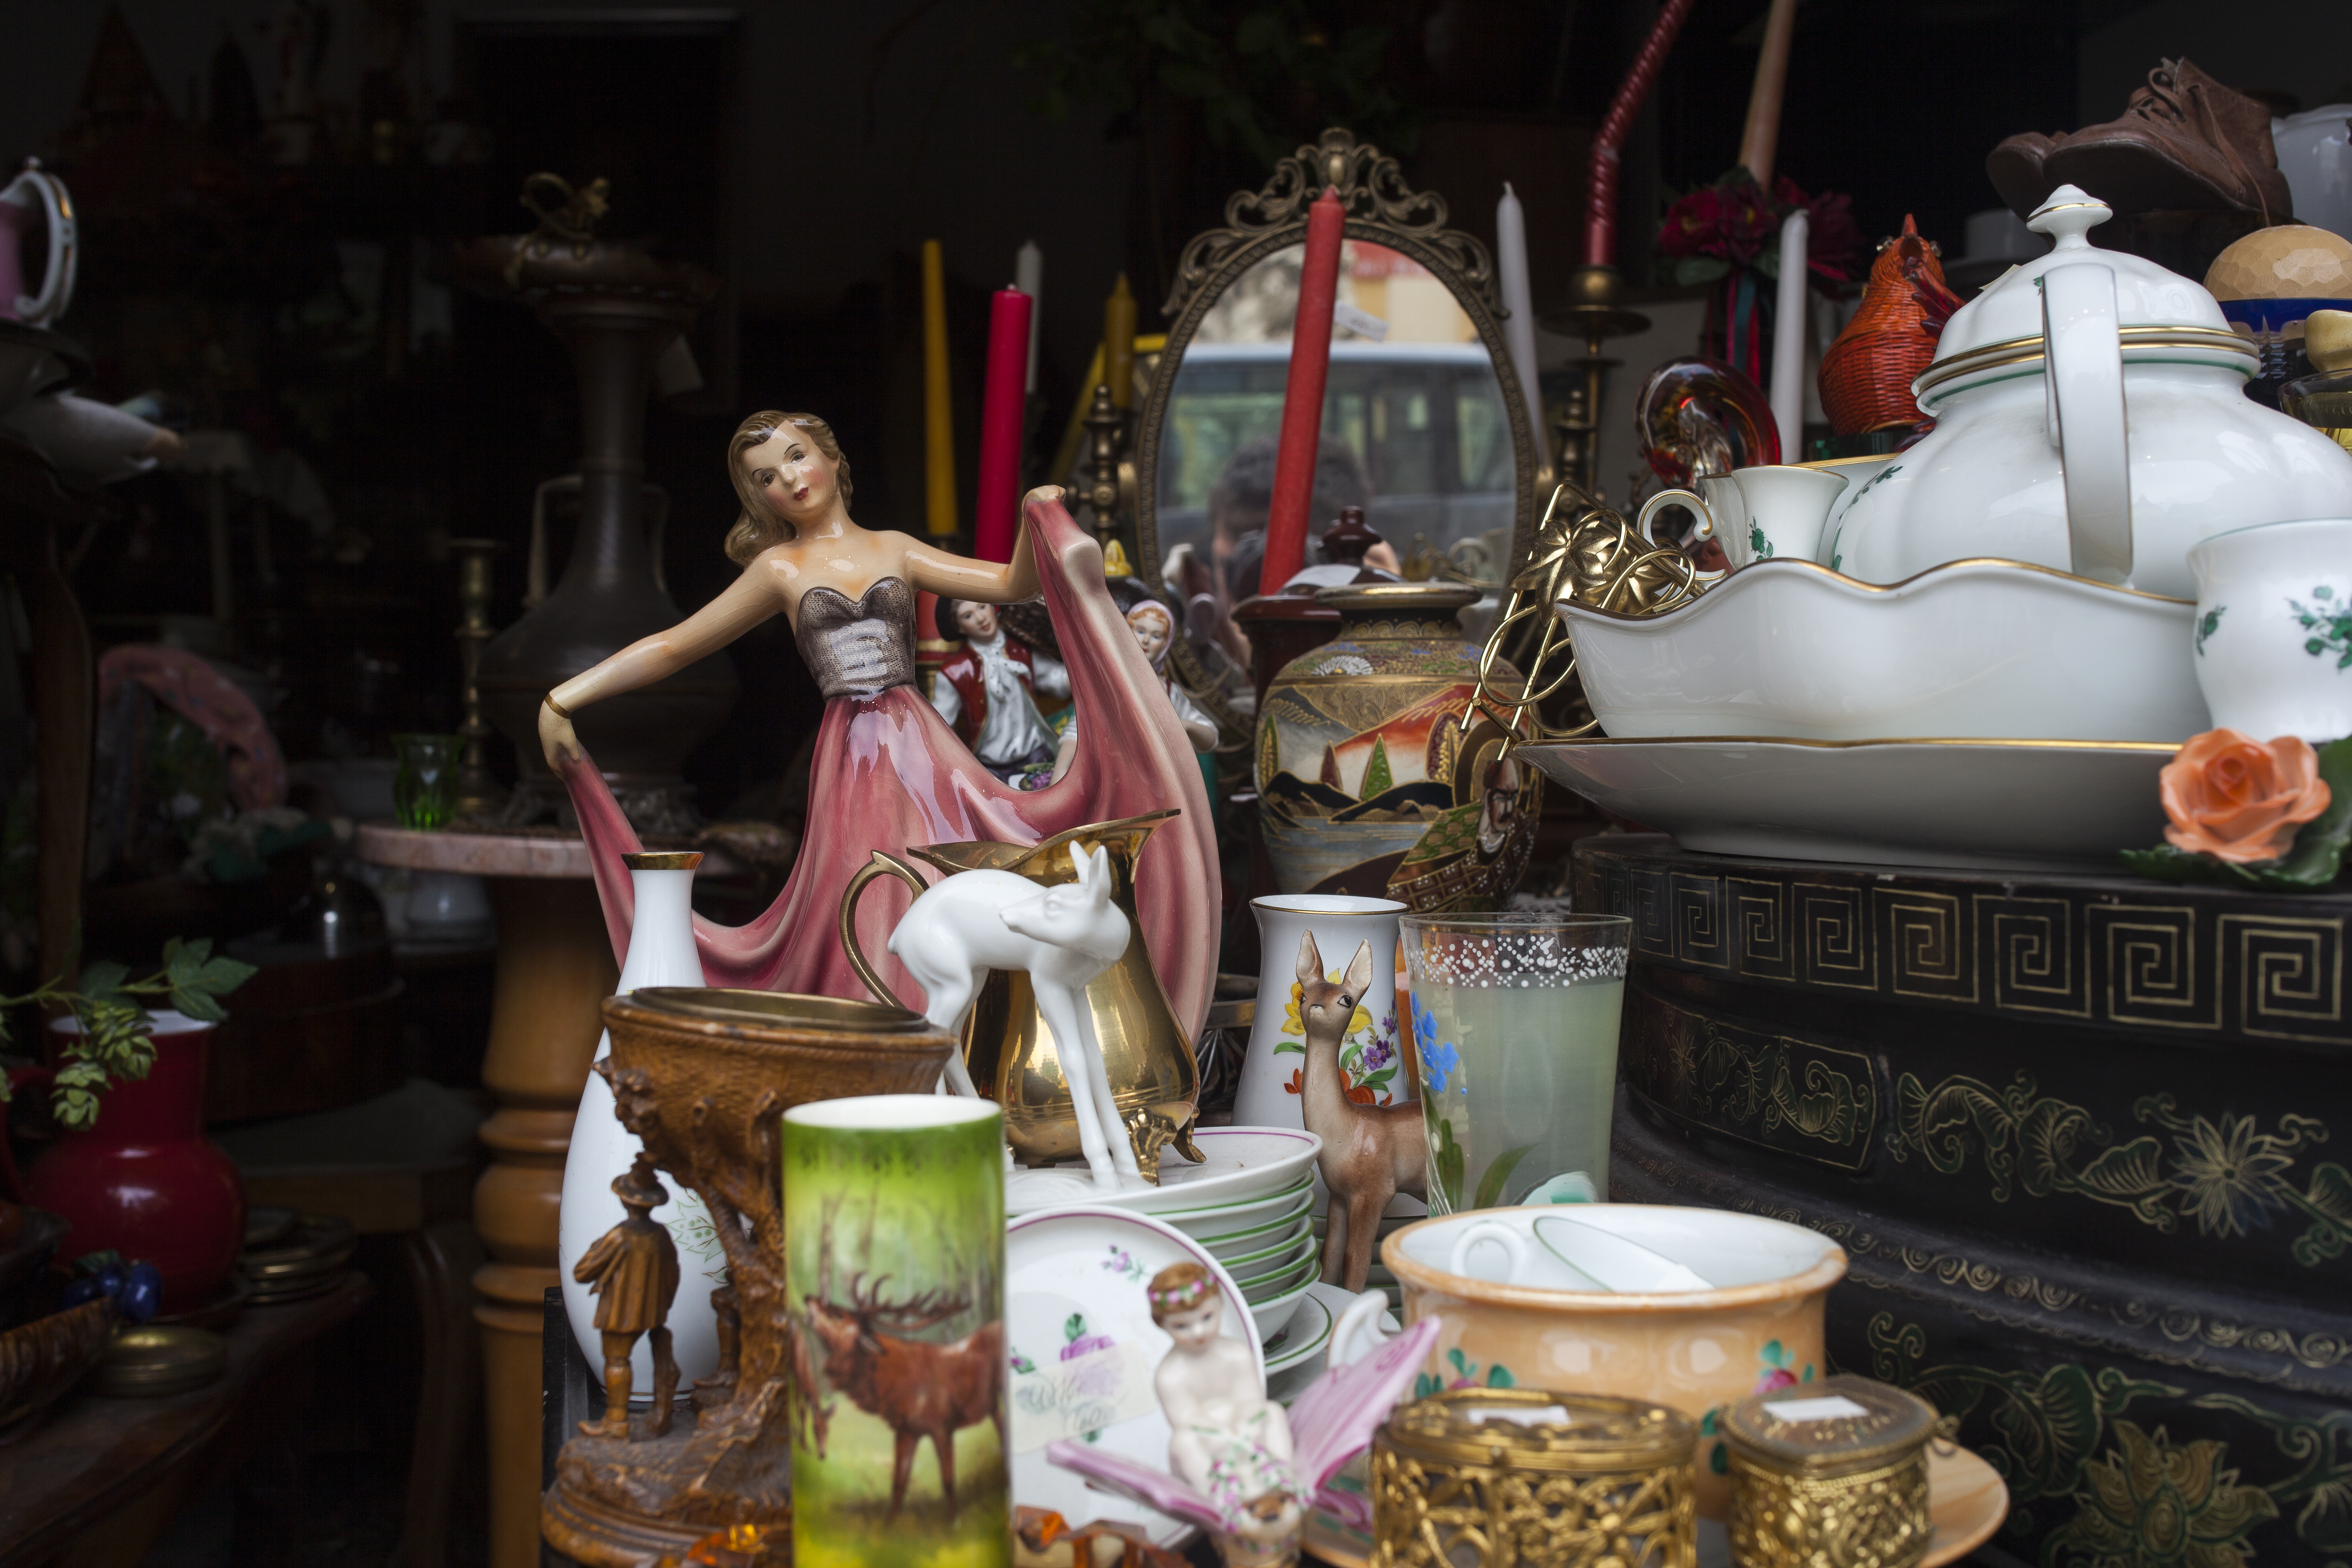 Objets vintage à vendre lors d'un vide-grenier | Source : Getty Images